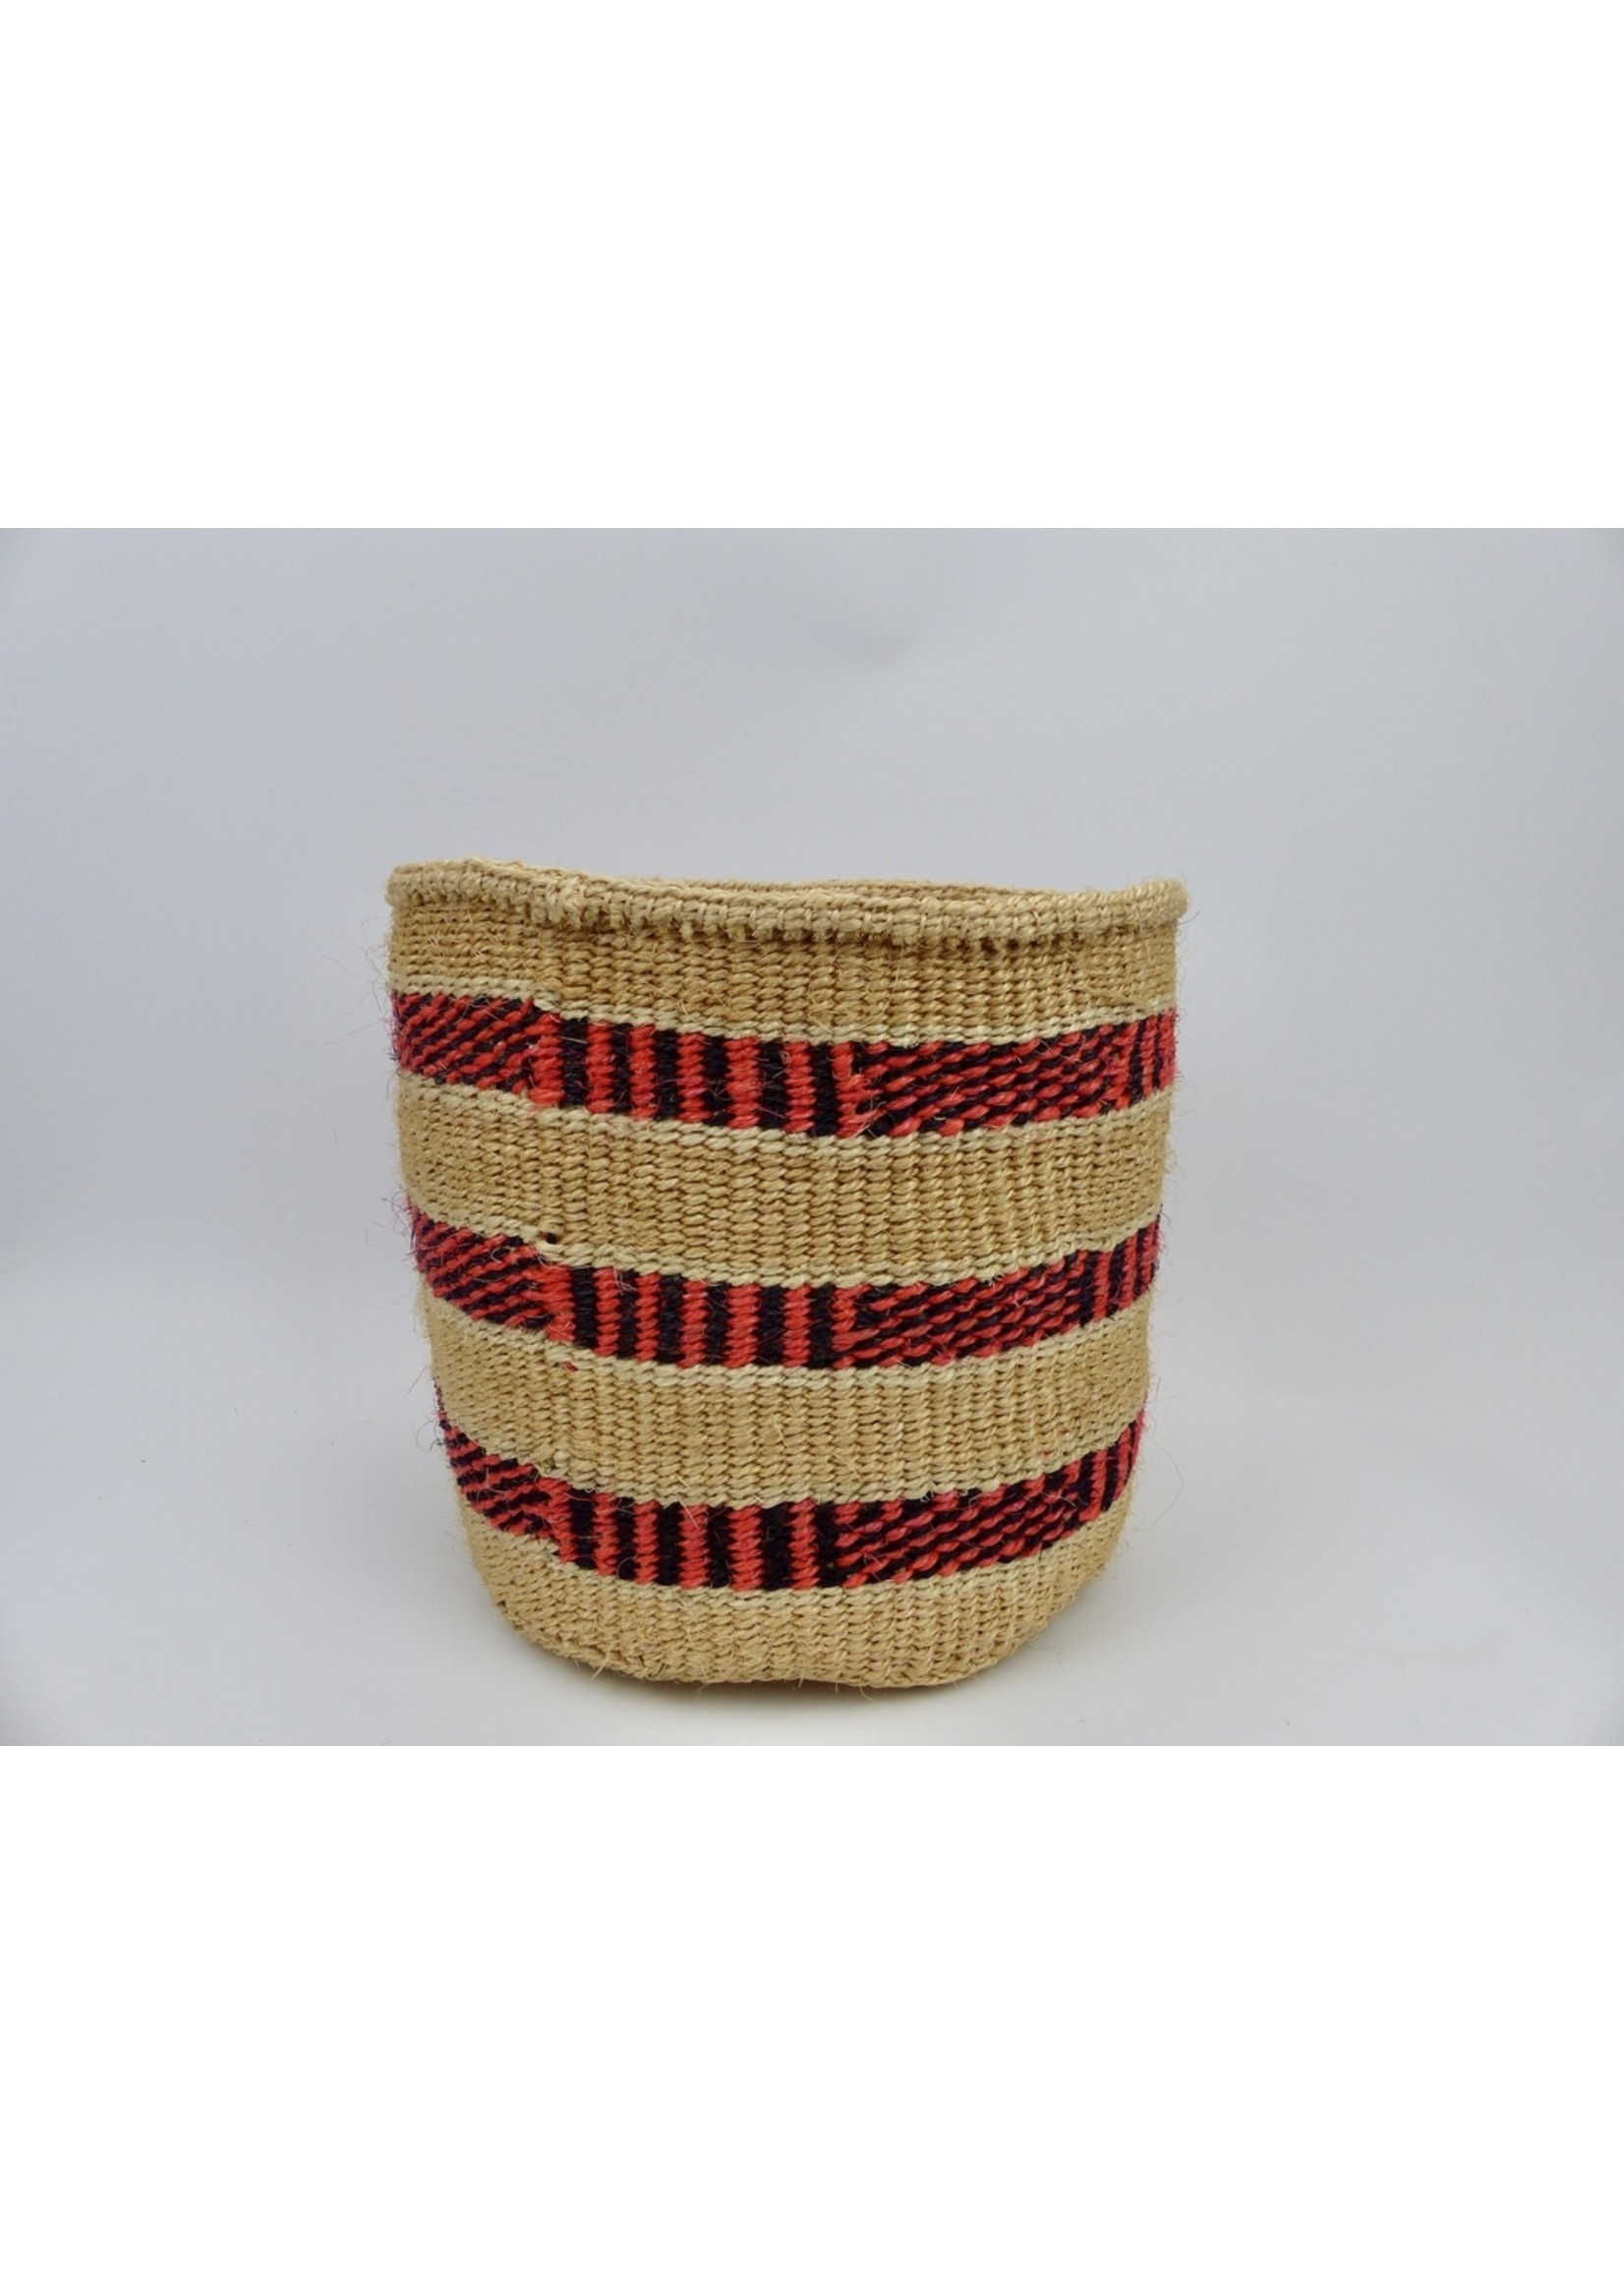 Hadithi Hadithi Basket M - Red & brown alternating patterns by Joyce Wambua